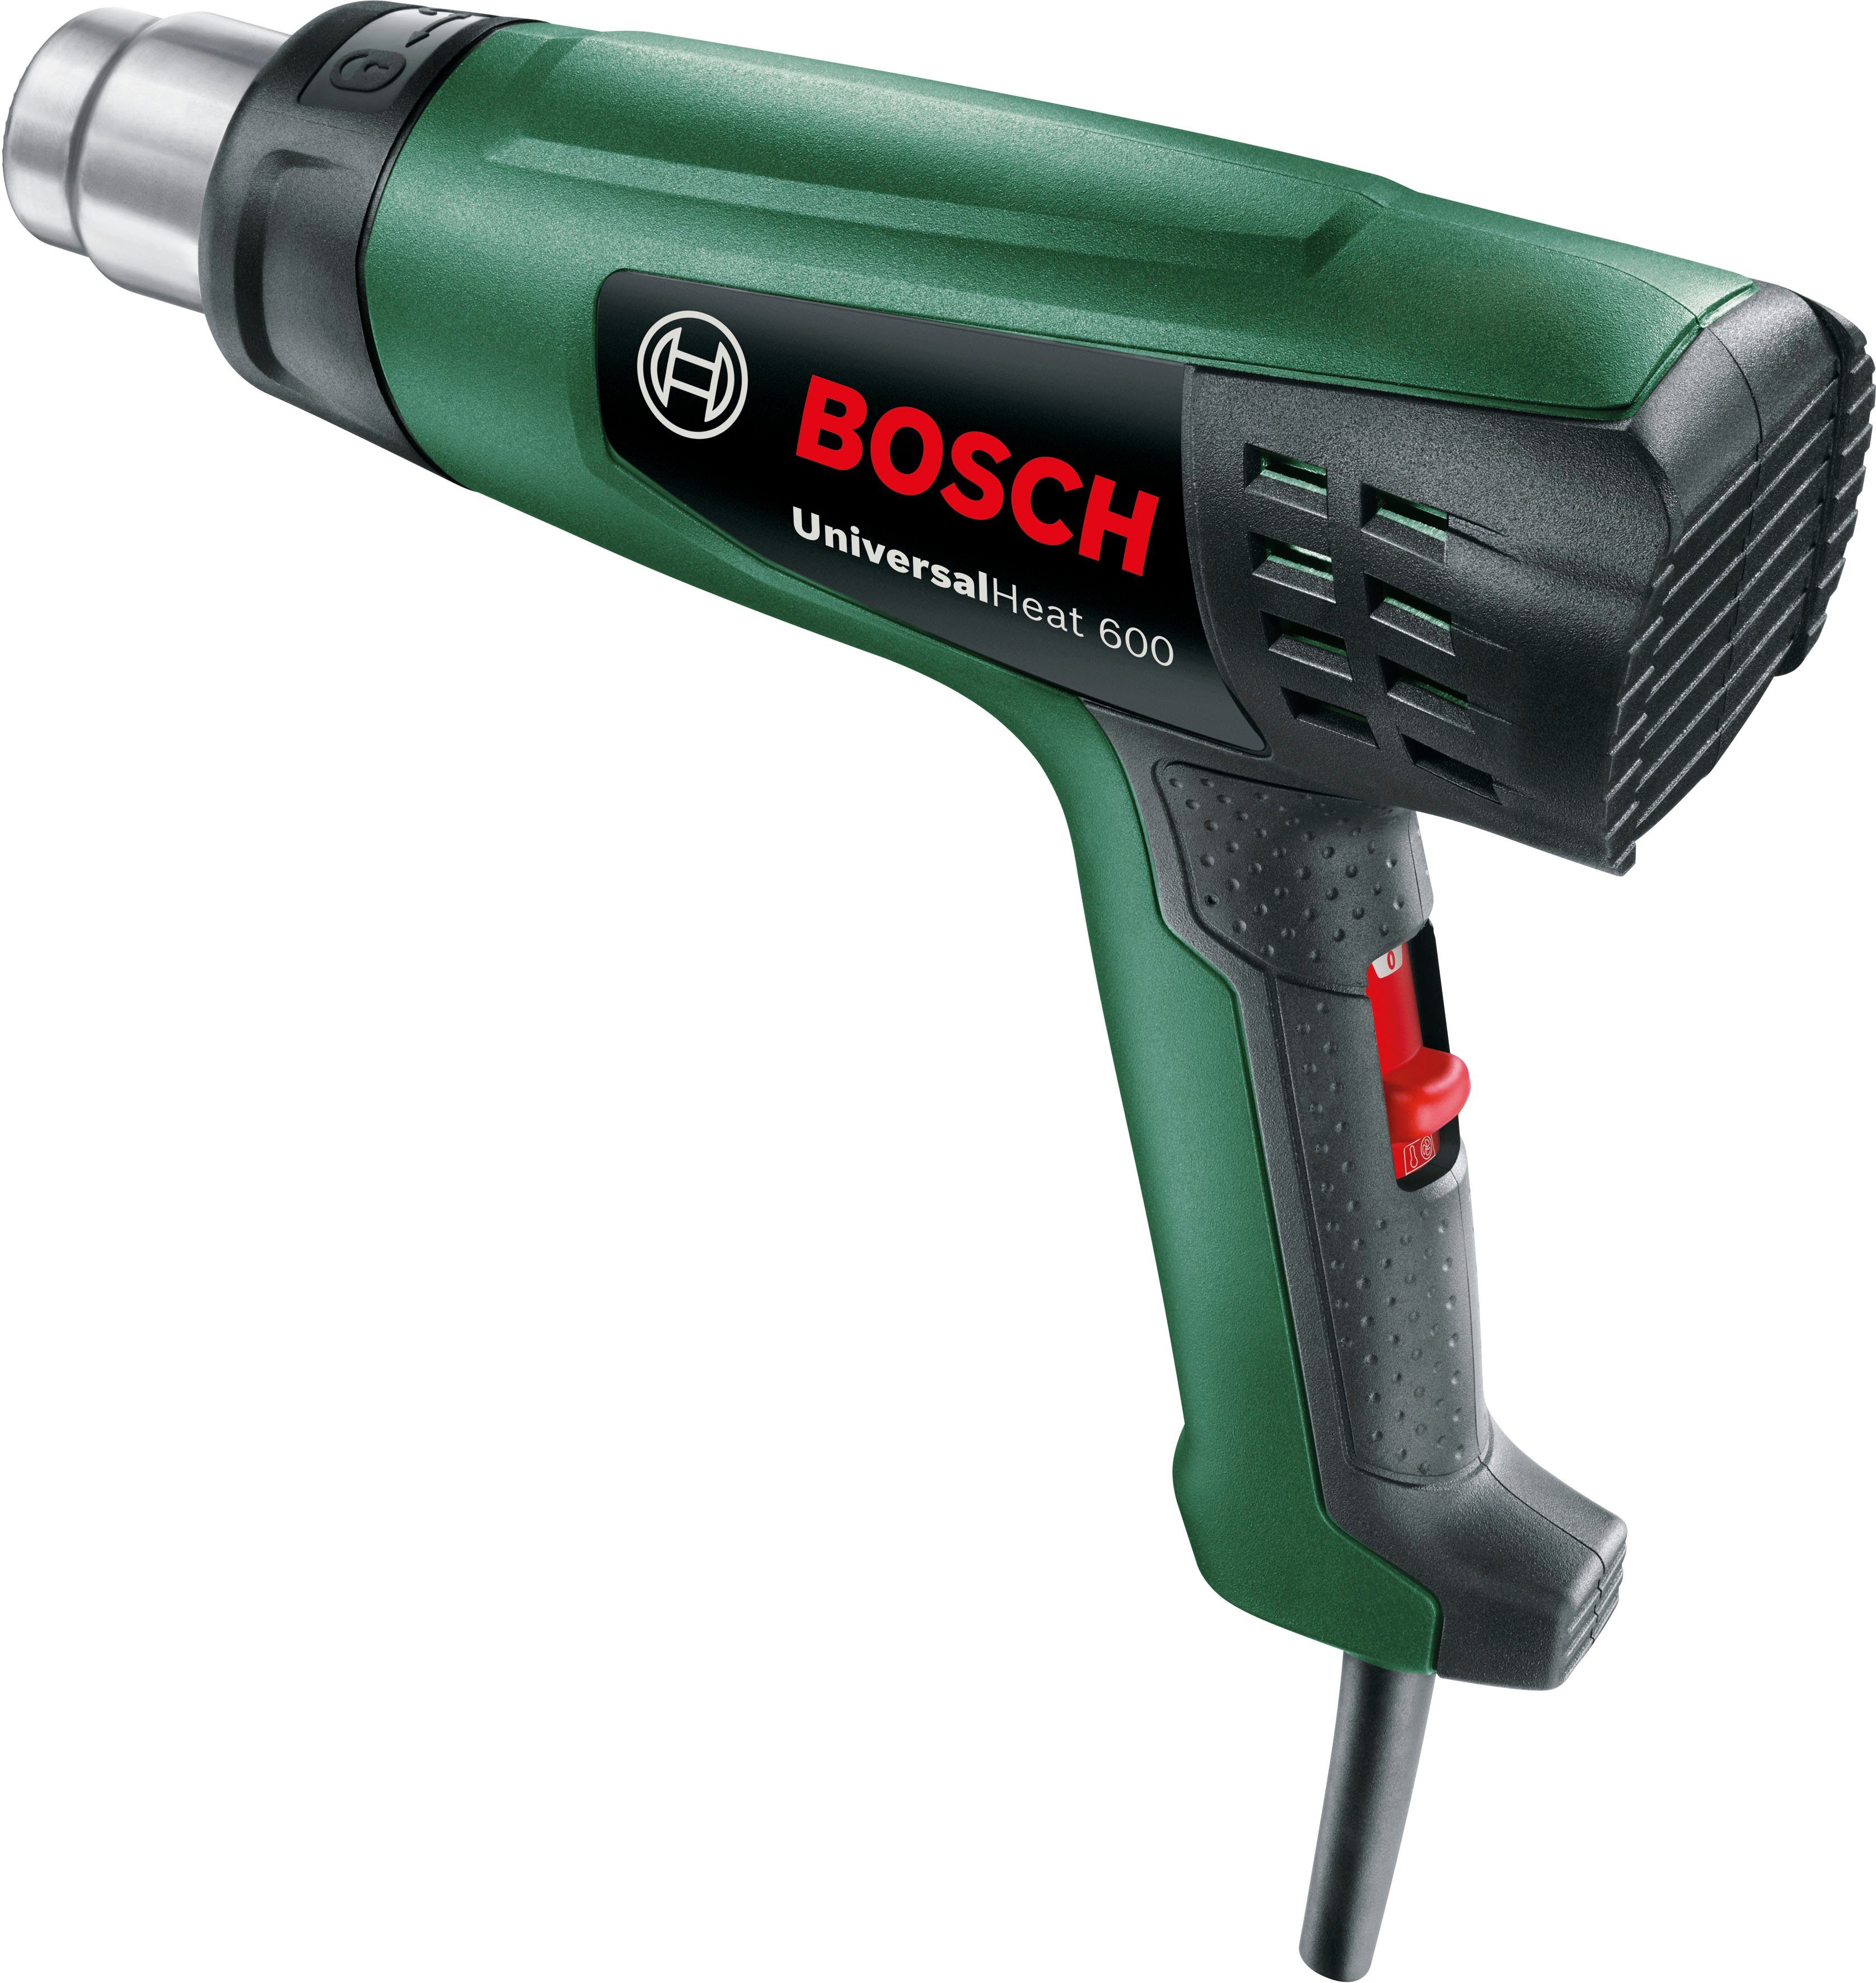 Bosch Home max. bis & Garden Heißluftgebläse UniversalHeat 600, 600 °C